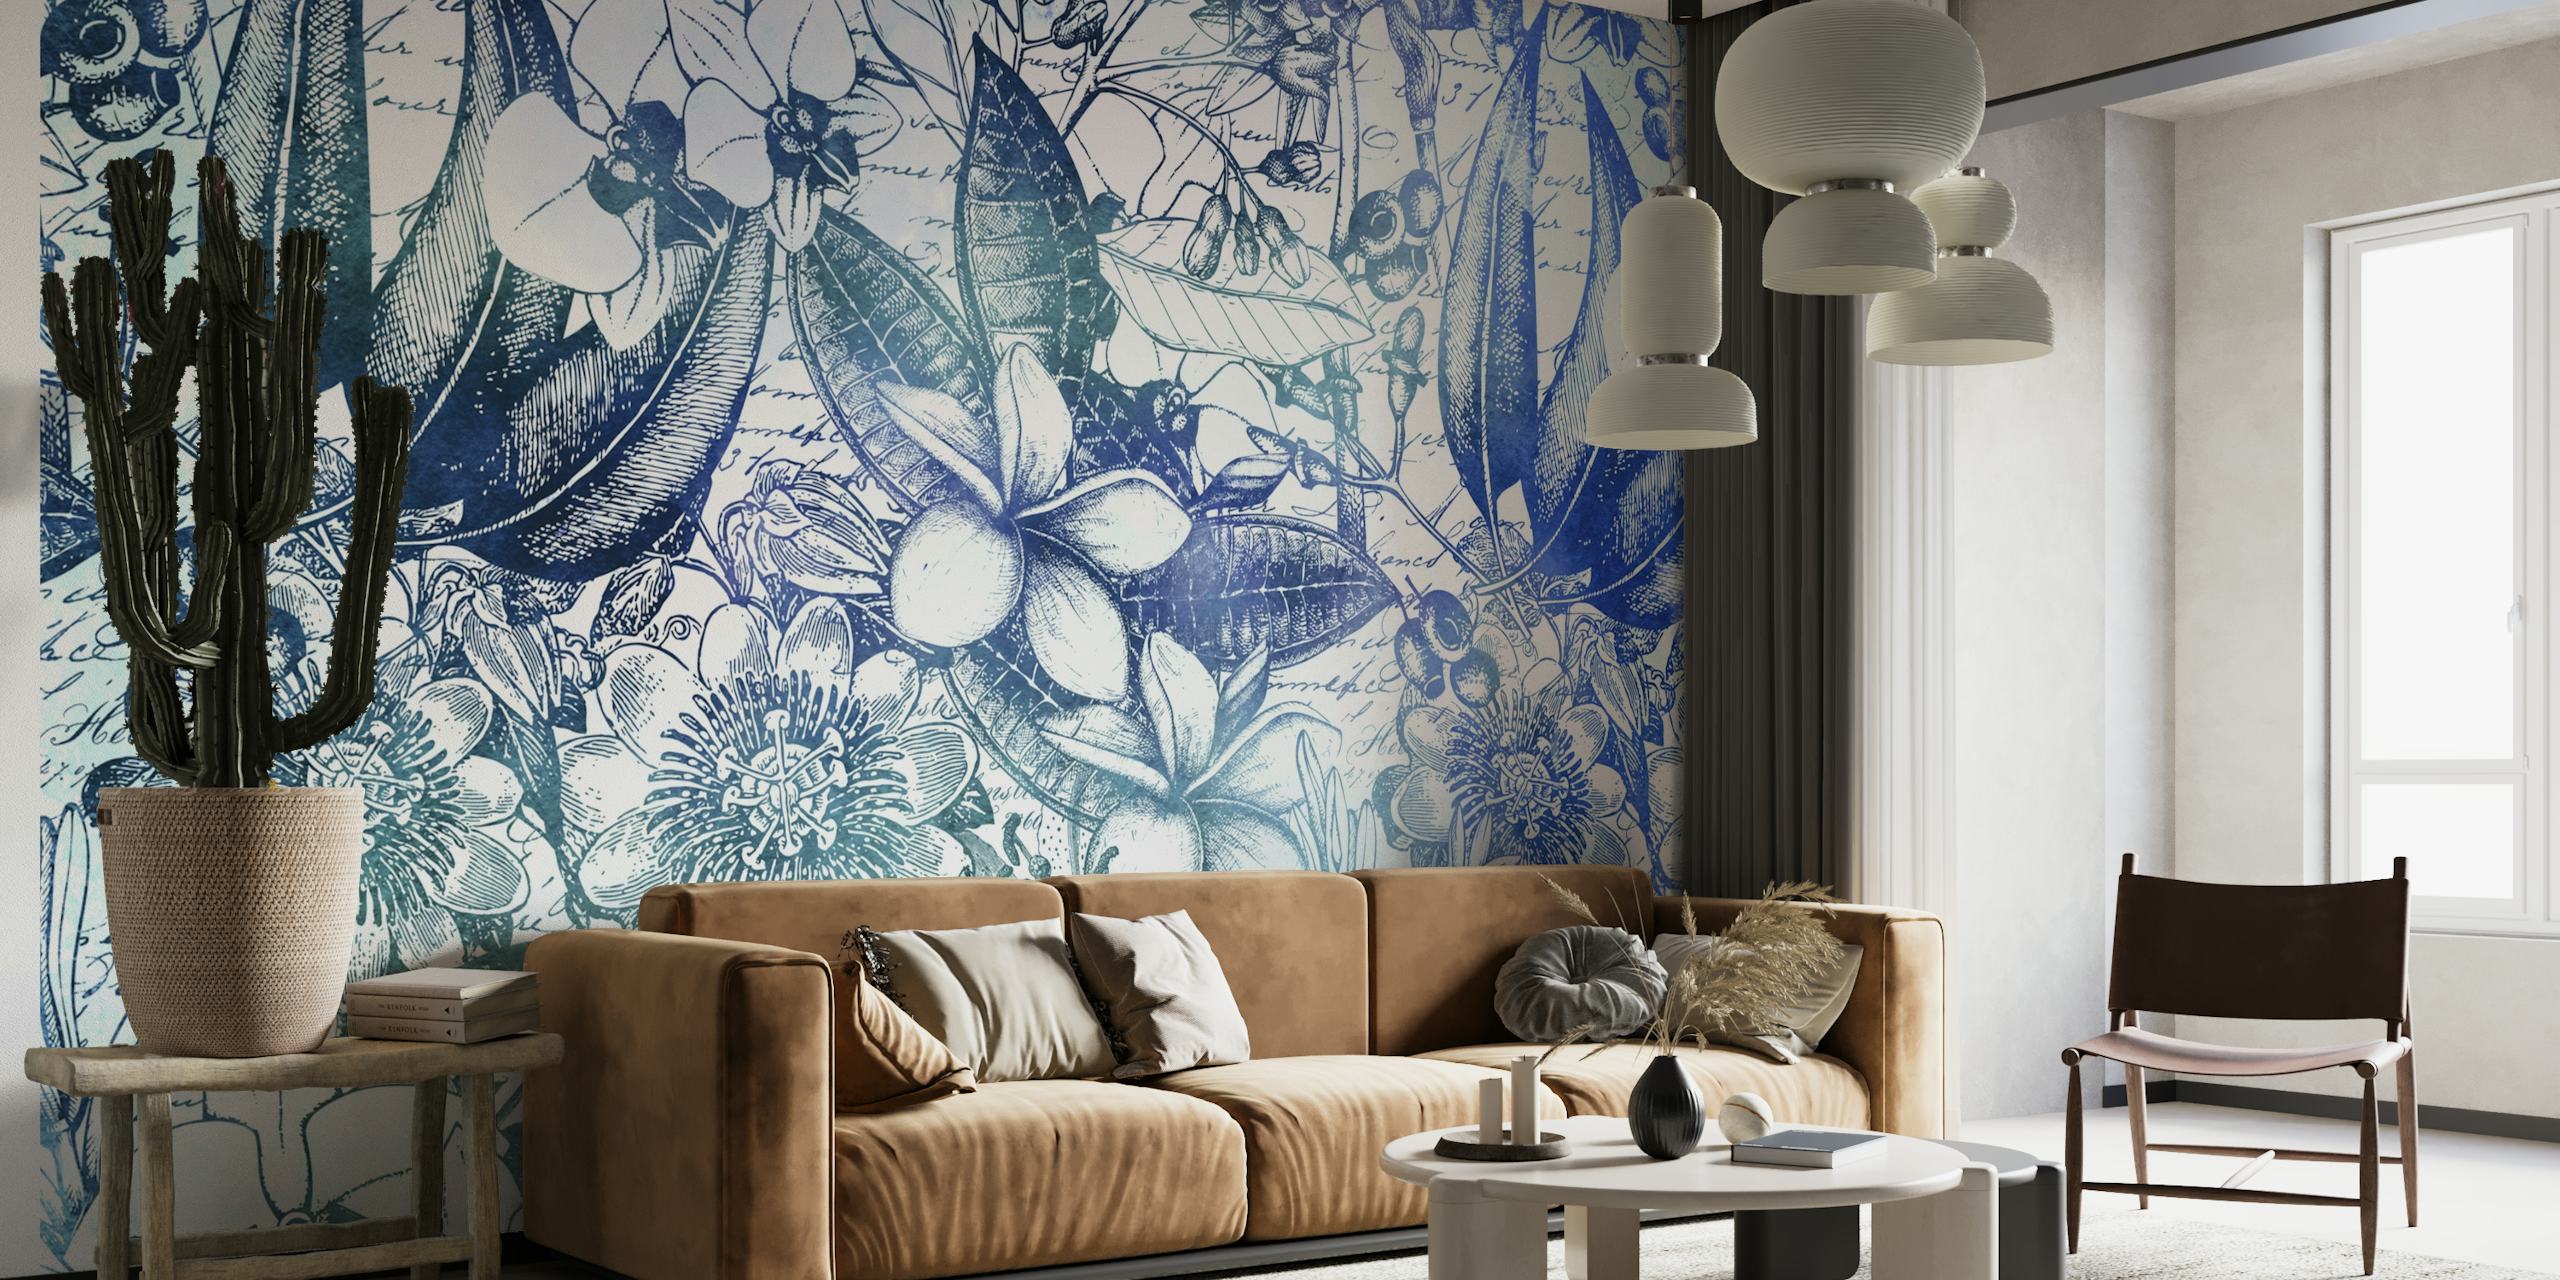 Papier peint botanique de style vintage avec des tons bleus représentant des feuilles, des oiseaux et des fleurs